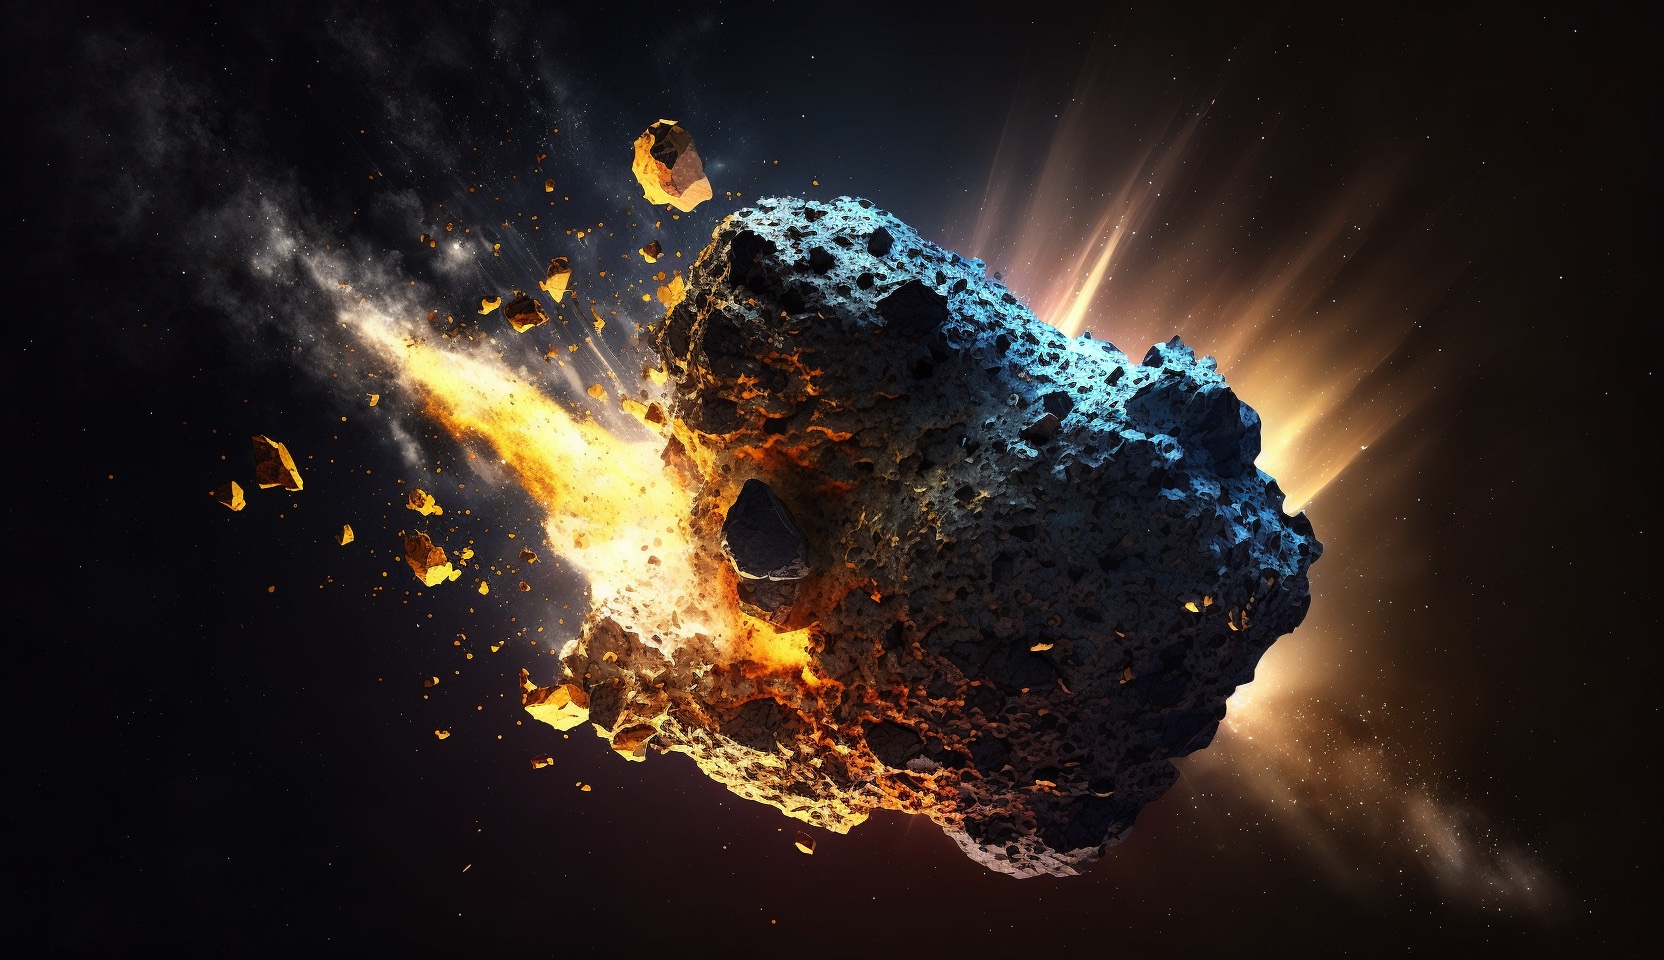 Asteroid rushing through space